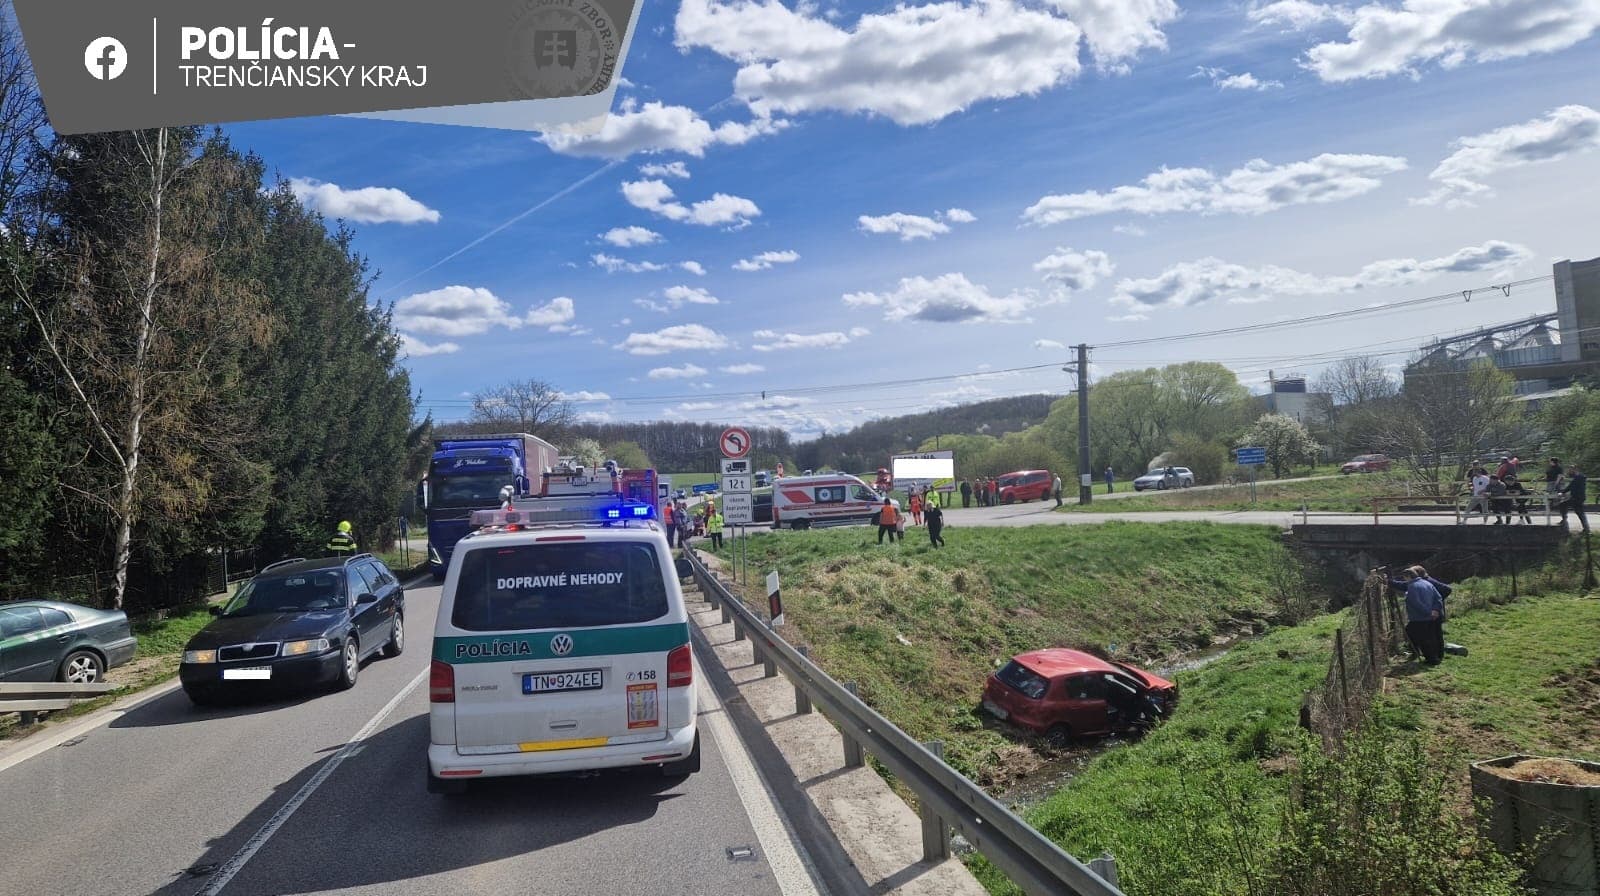 Baleset miatt rendőrök irányítják a forgalmat a trencséni járásbeli Svinná község közelében